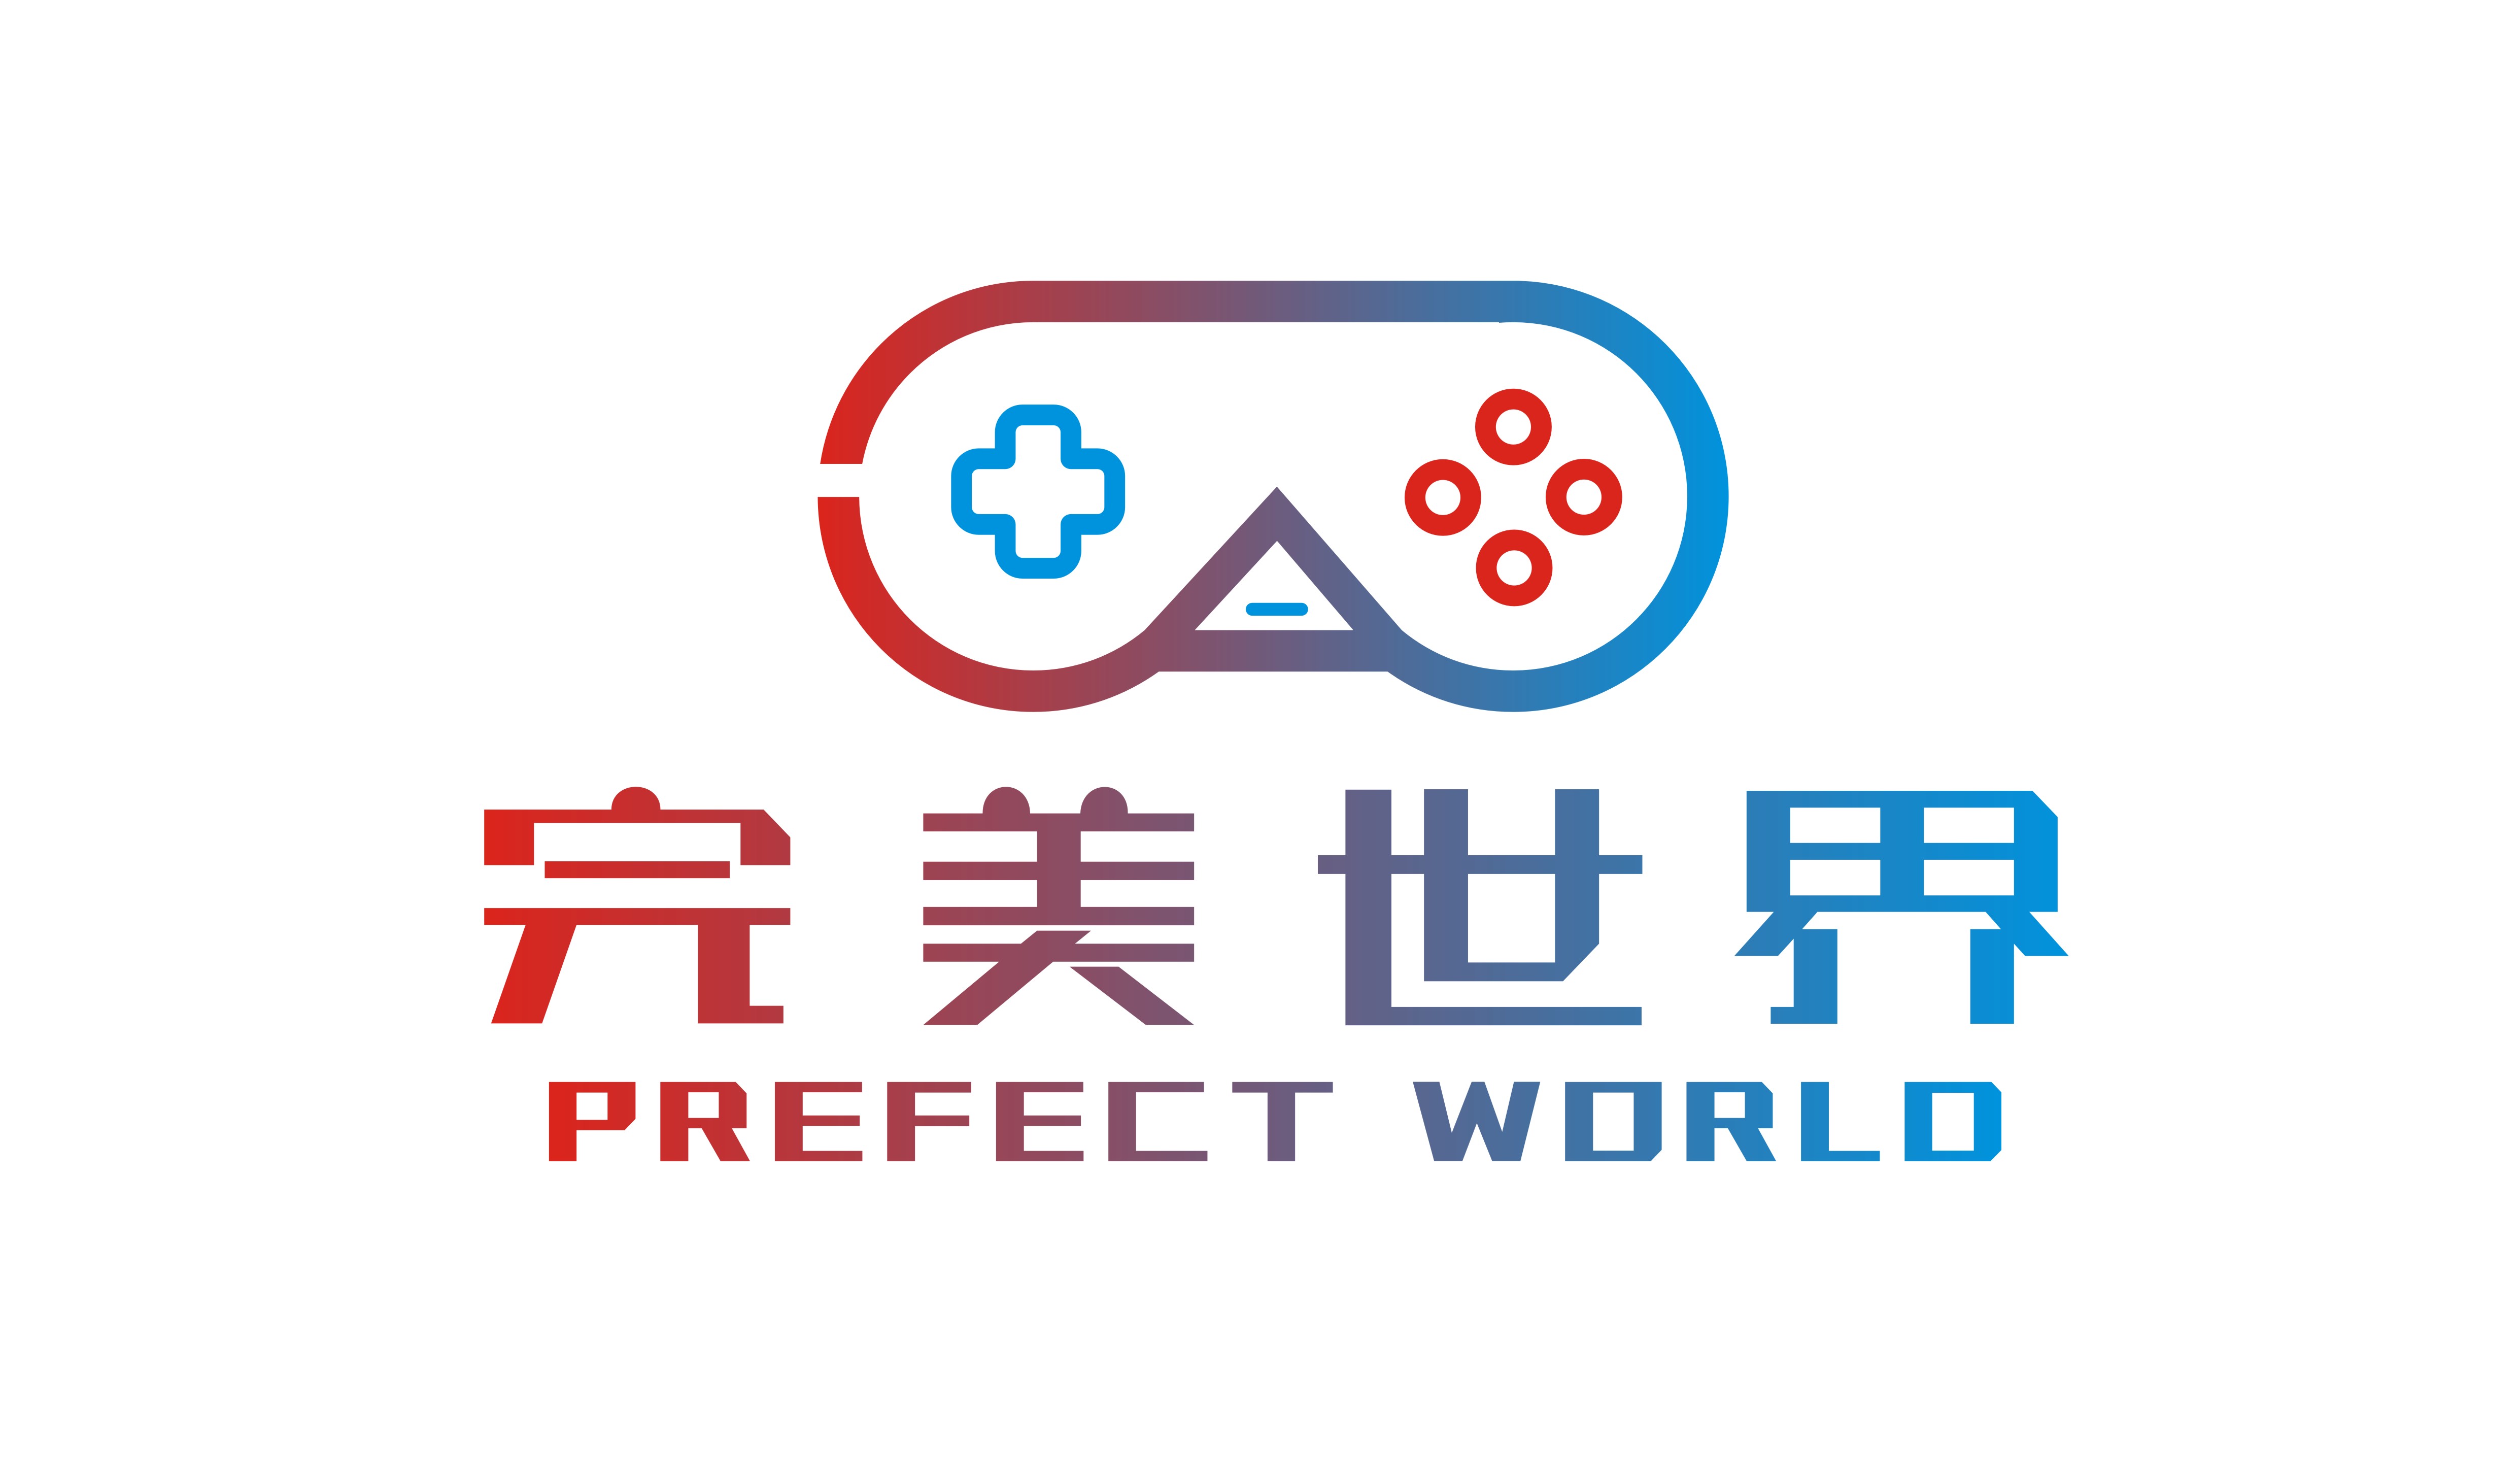 完美世界logo设计与展示效果(包含两个方案ab)